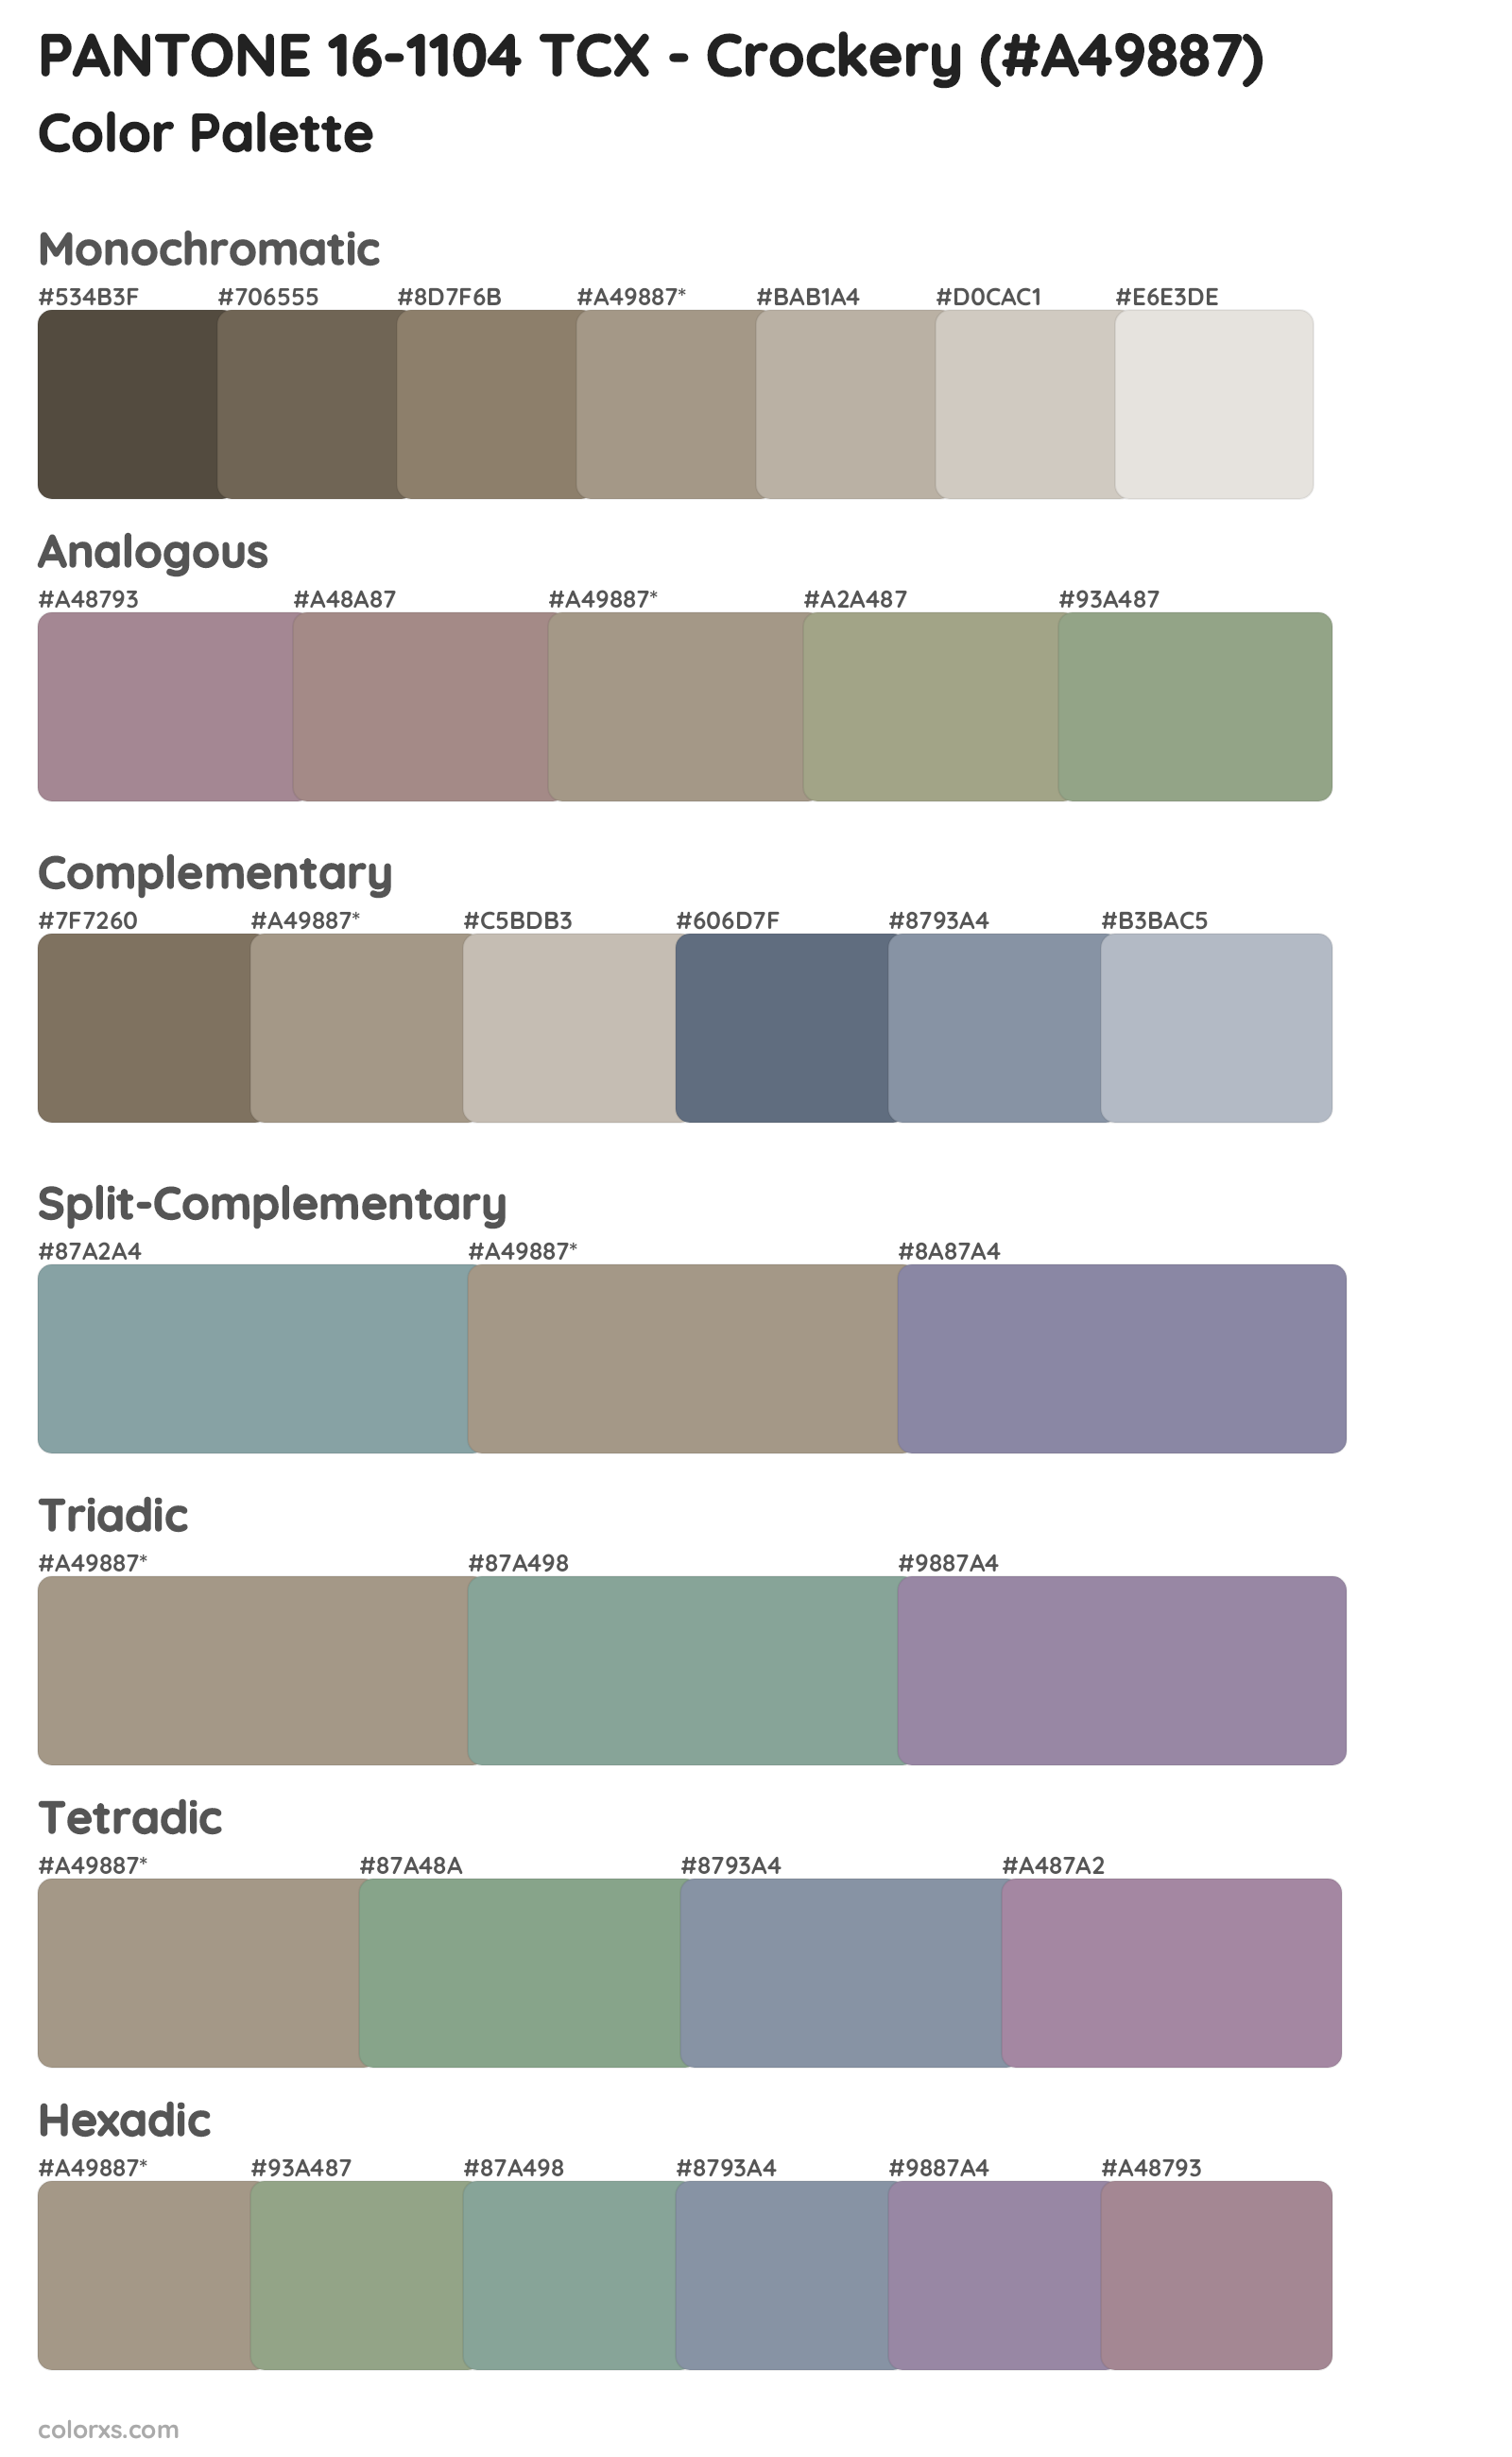 PANTONE 16-1104 TCX - Crockery Color Scheme Palettes